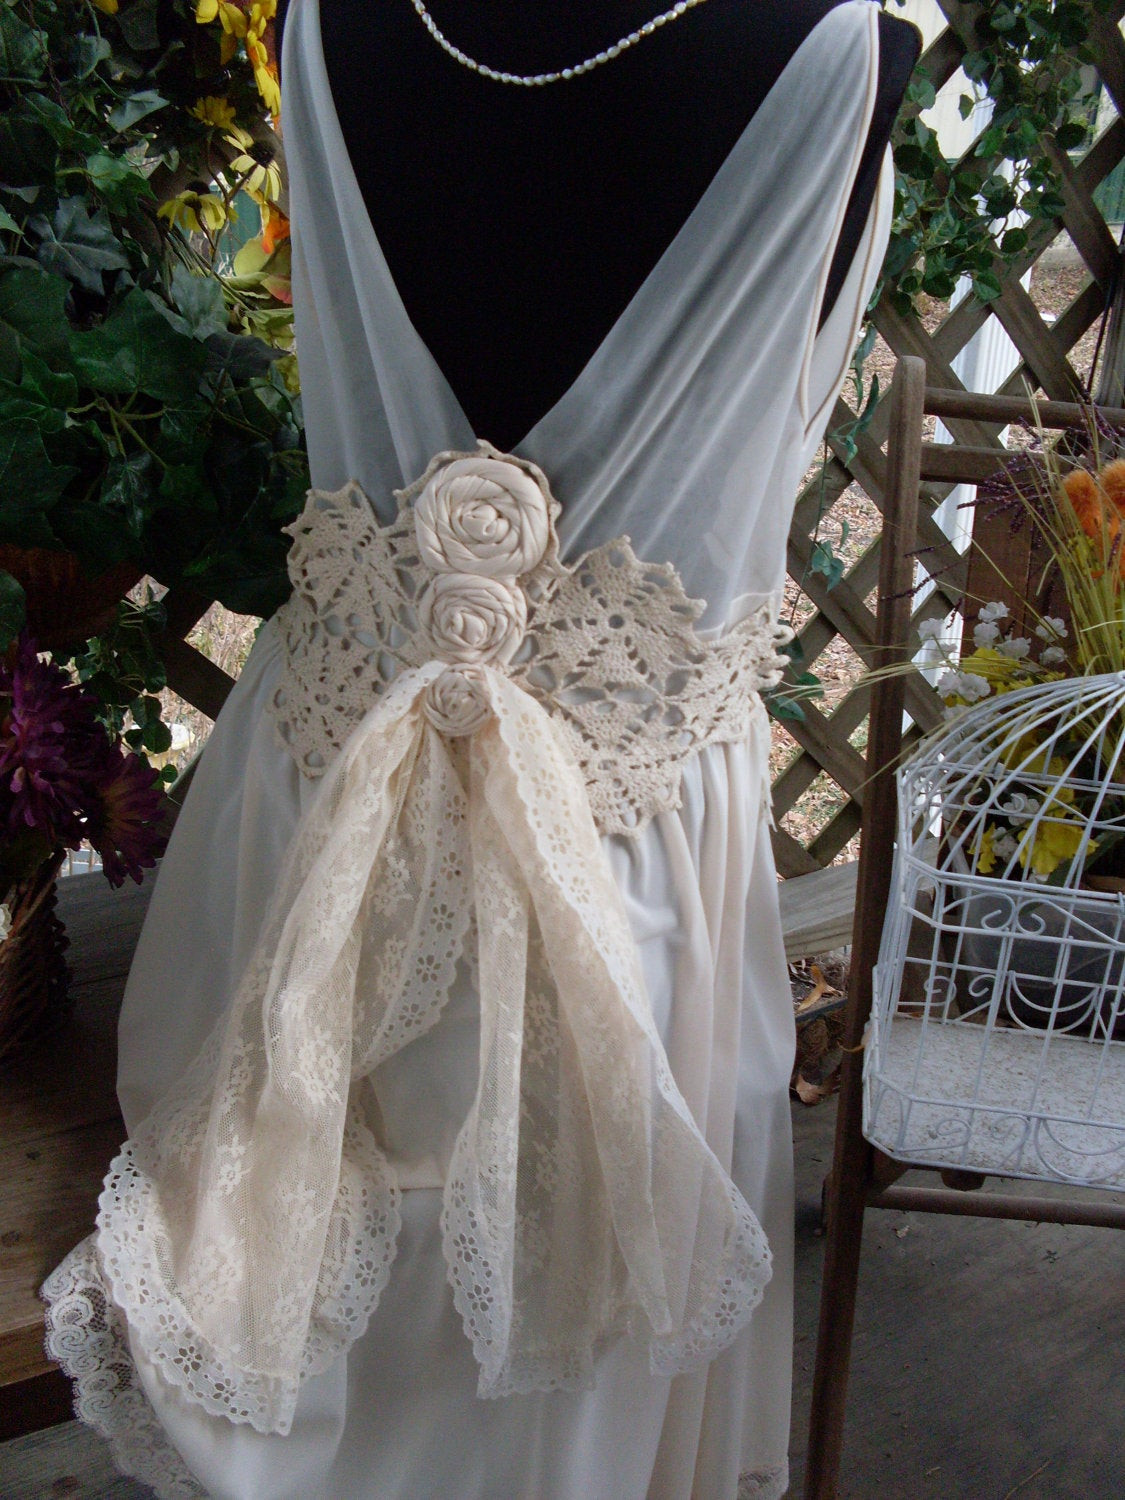 Shabby Chic Wedding Dresses
 Wedding dress vintage shabby chic gypsy boho